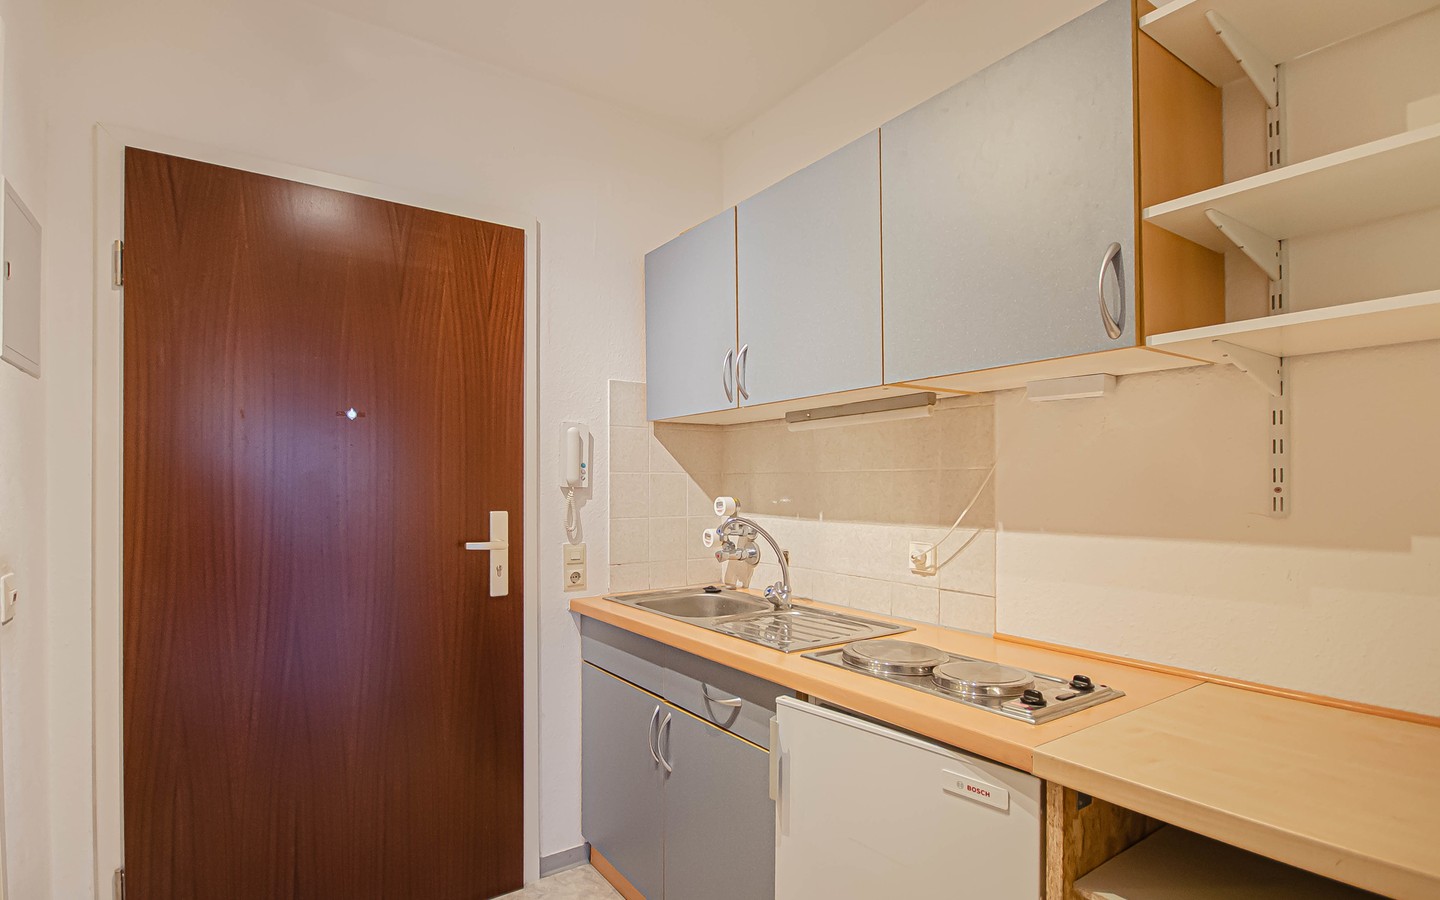 Diele / Küche - HD-Handschuhsheim: tolle 1-Zimmer-Wohnung mit Balkon und Tiefgaragenstellplatz